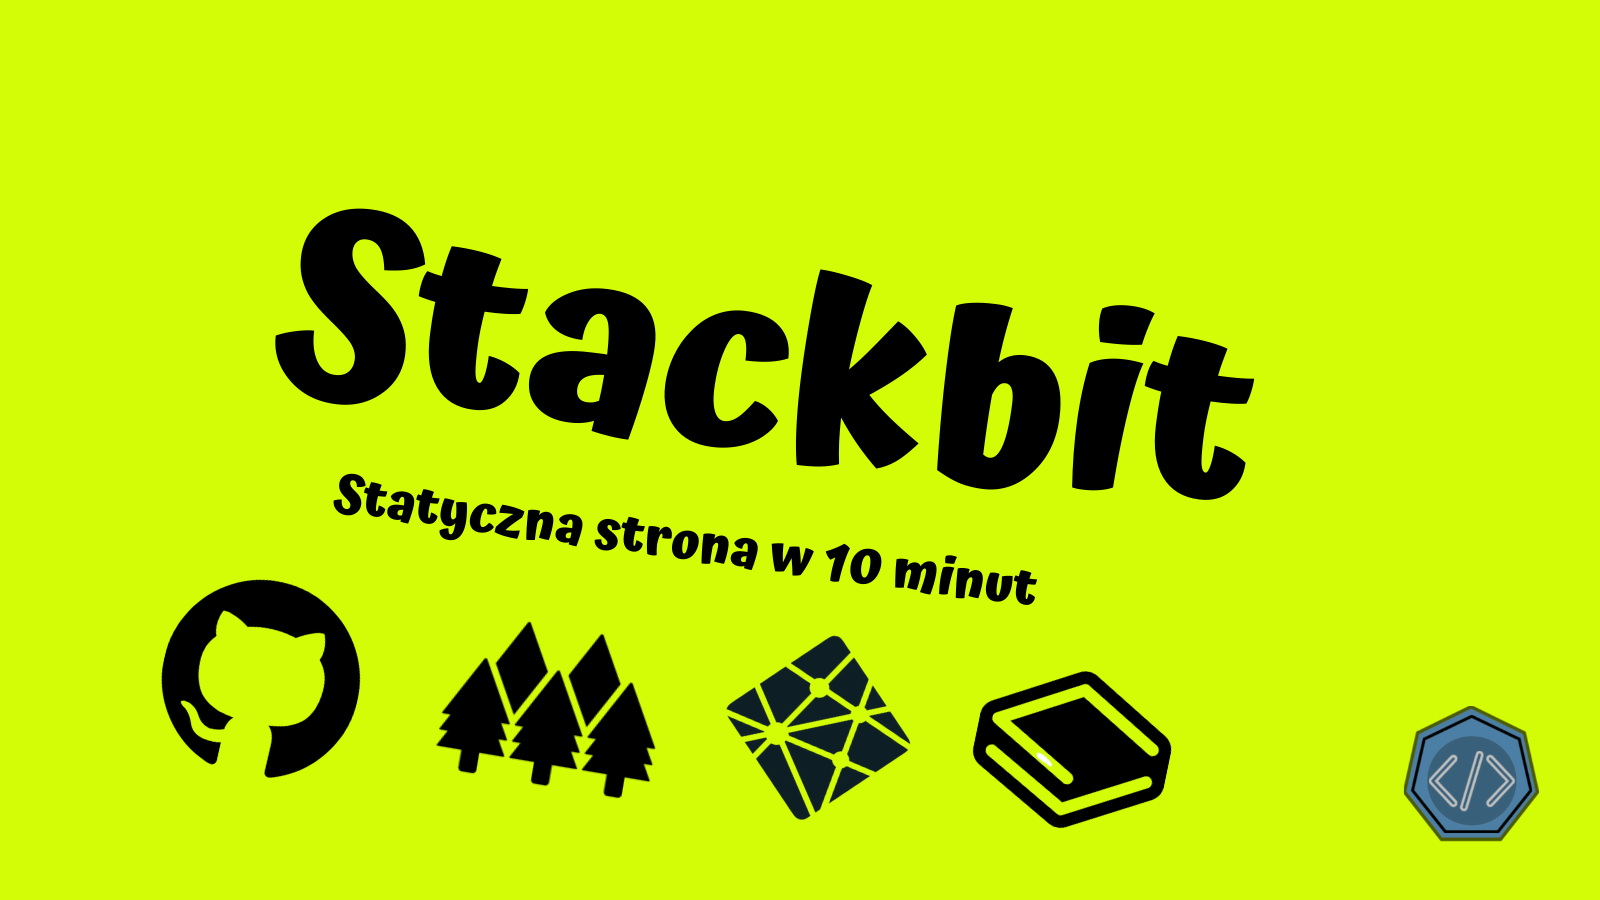 Stackbit. Tworzymy statyczną stronę www w 10 minut.